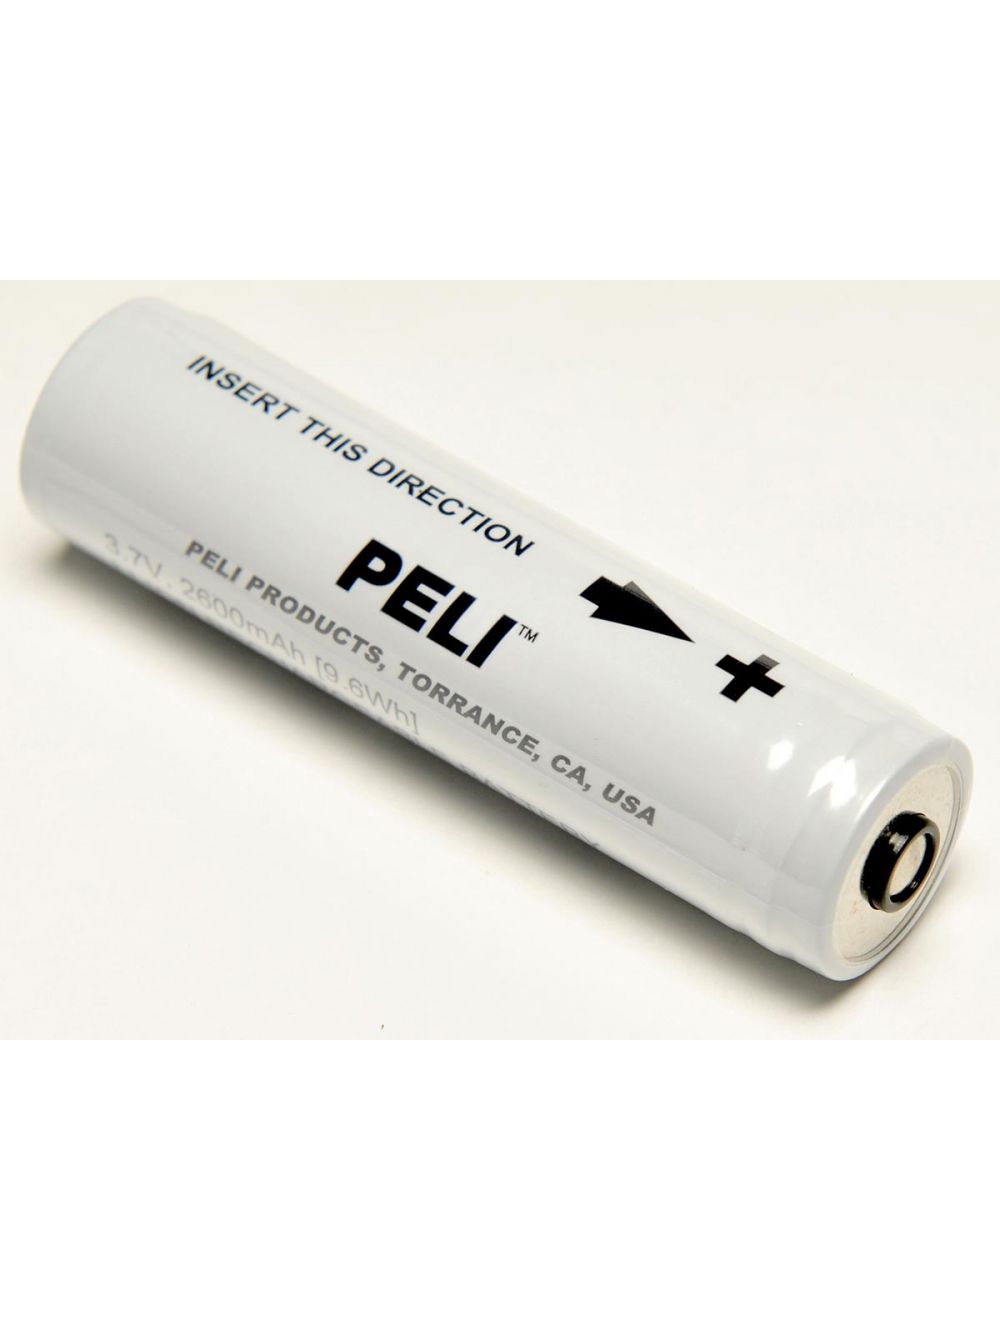 Betsy Trotwood stap Nodig uit Peli 2389 lithium-Ion reserve batterij kopen? Ledscherp.nl